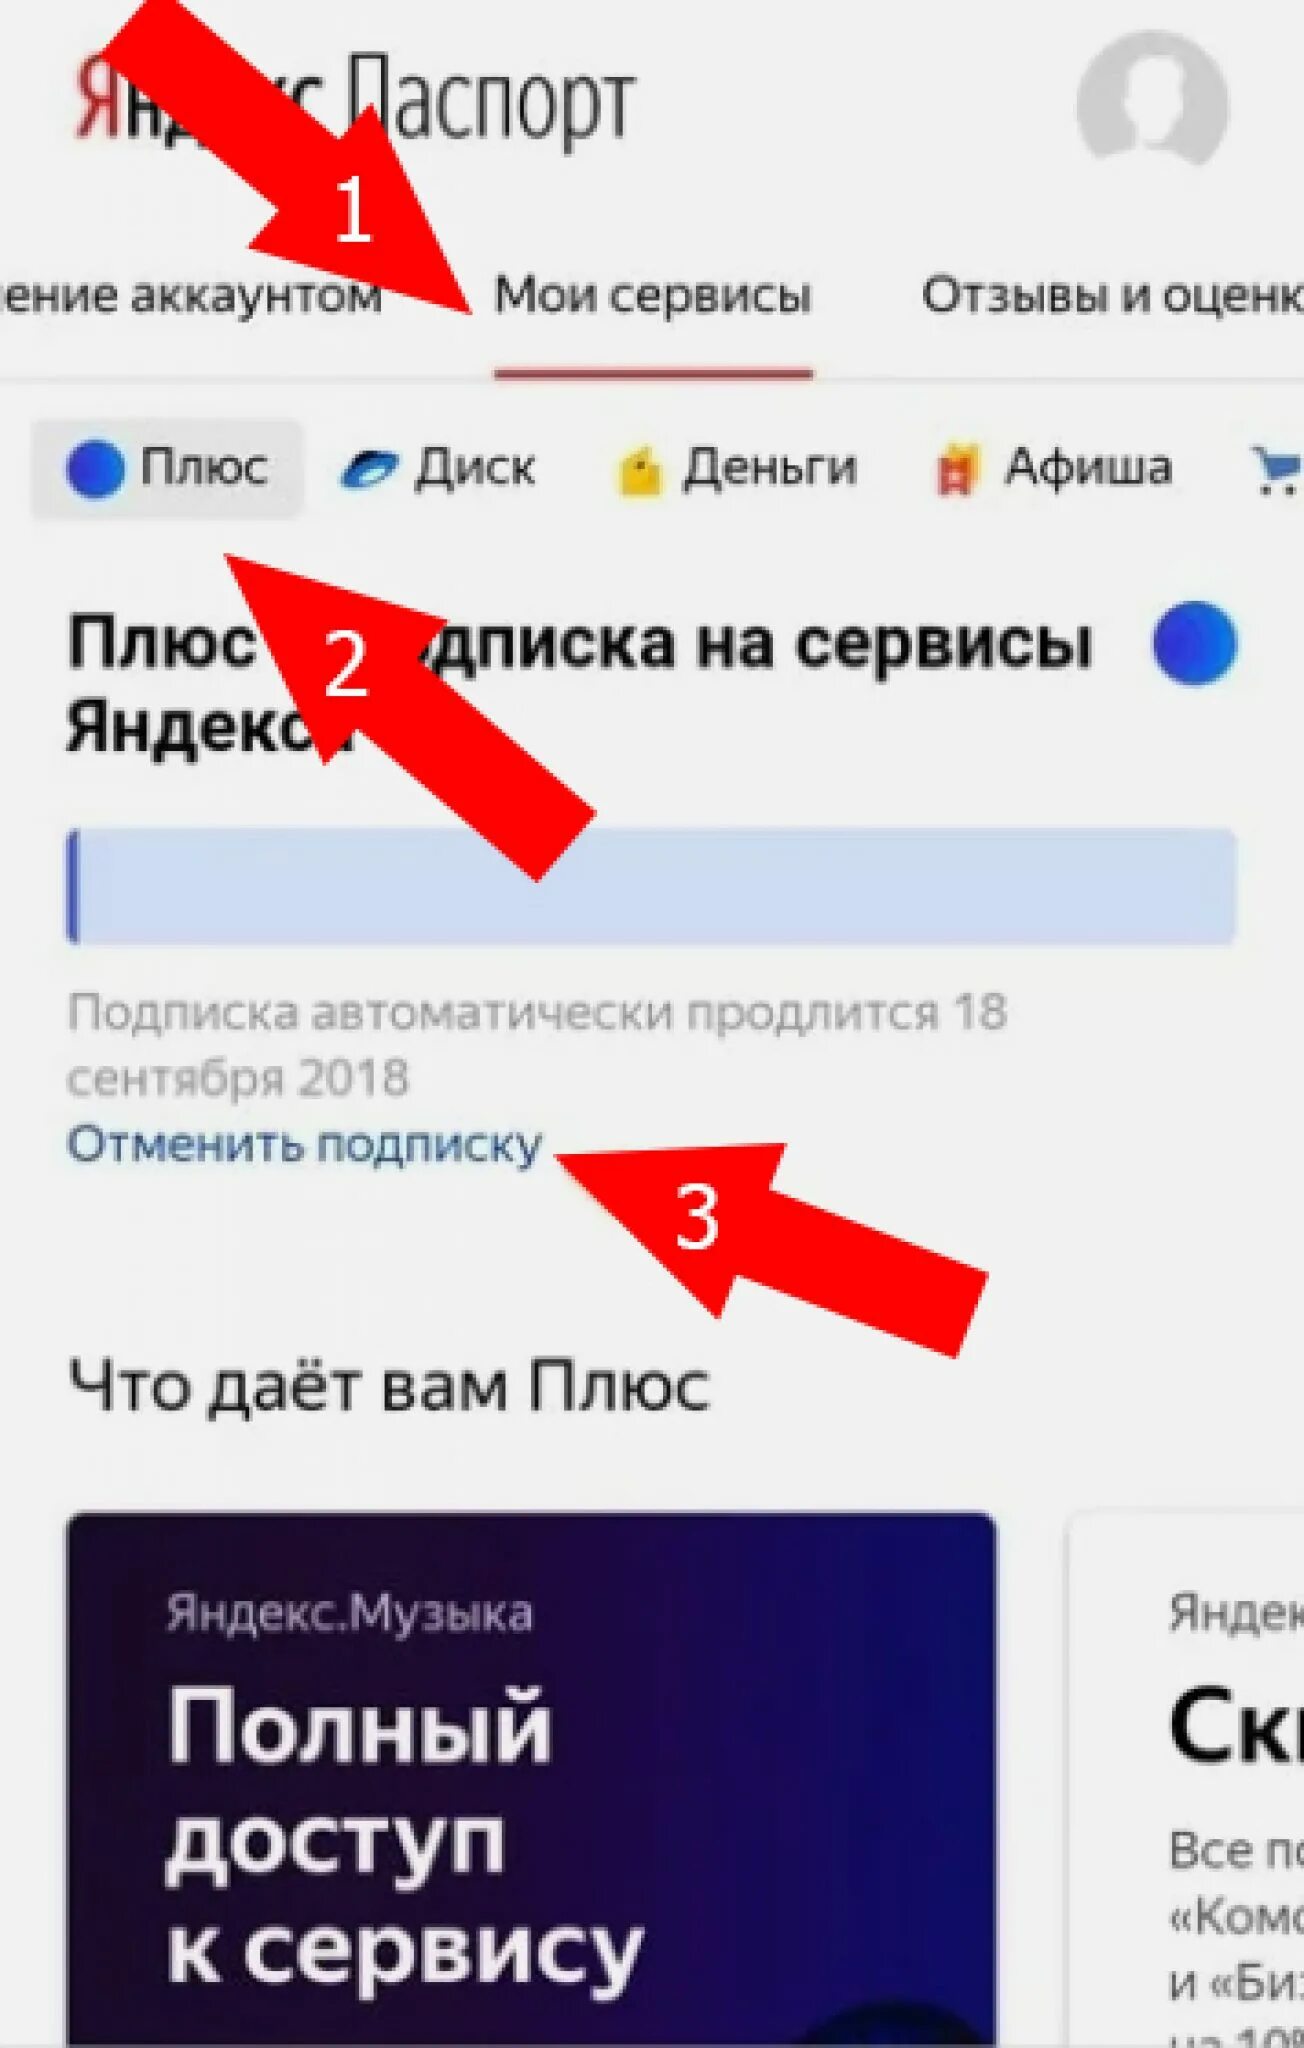 Где в личном кабинете подписки. Как отменить подписку Яндекс. Как отключить Яндекс плюс. Как отменить подписку Яндекс плюс. Яндекс подписка.